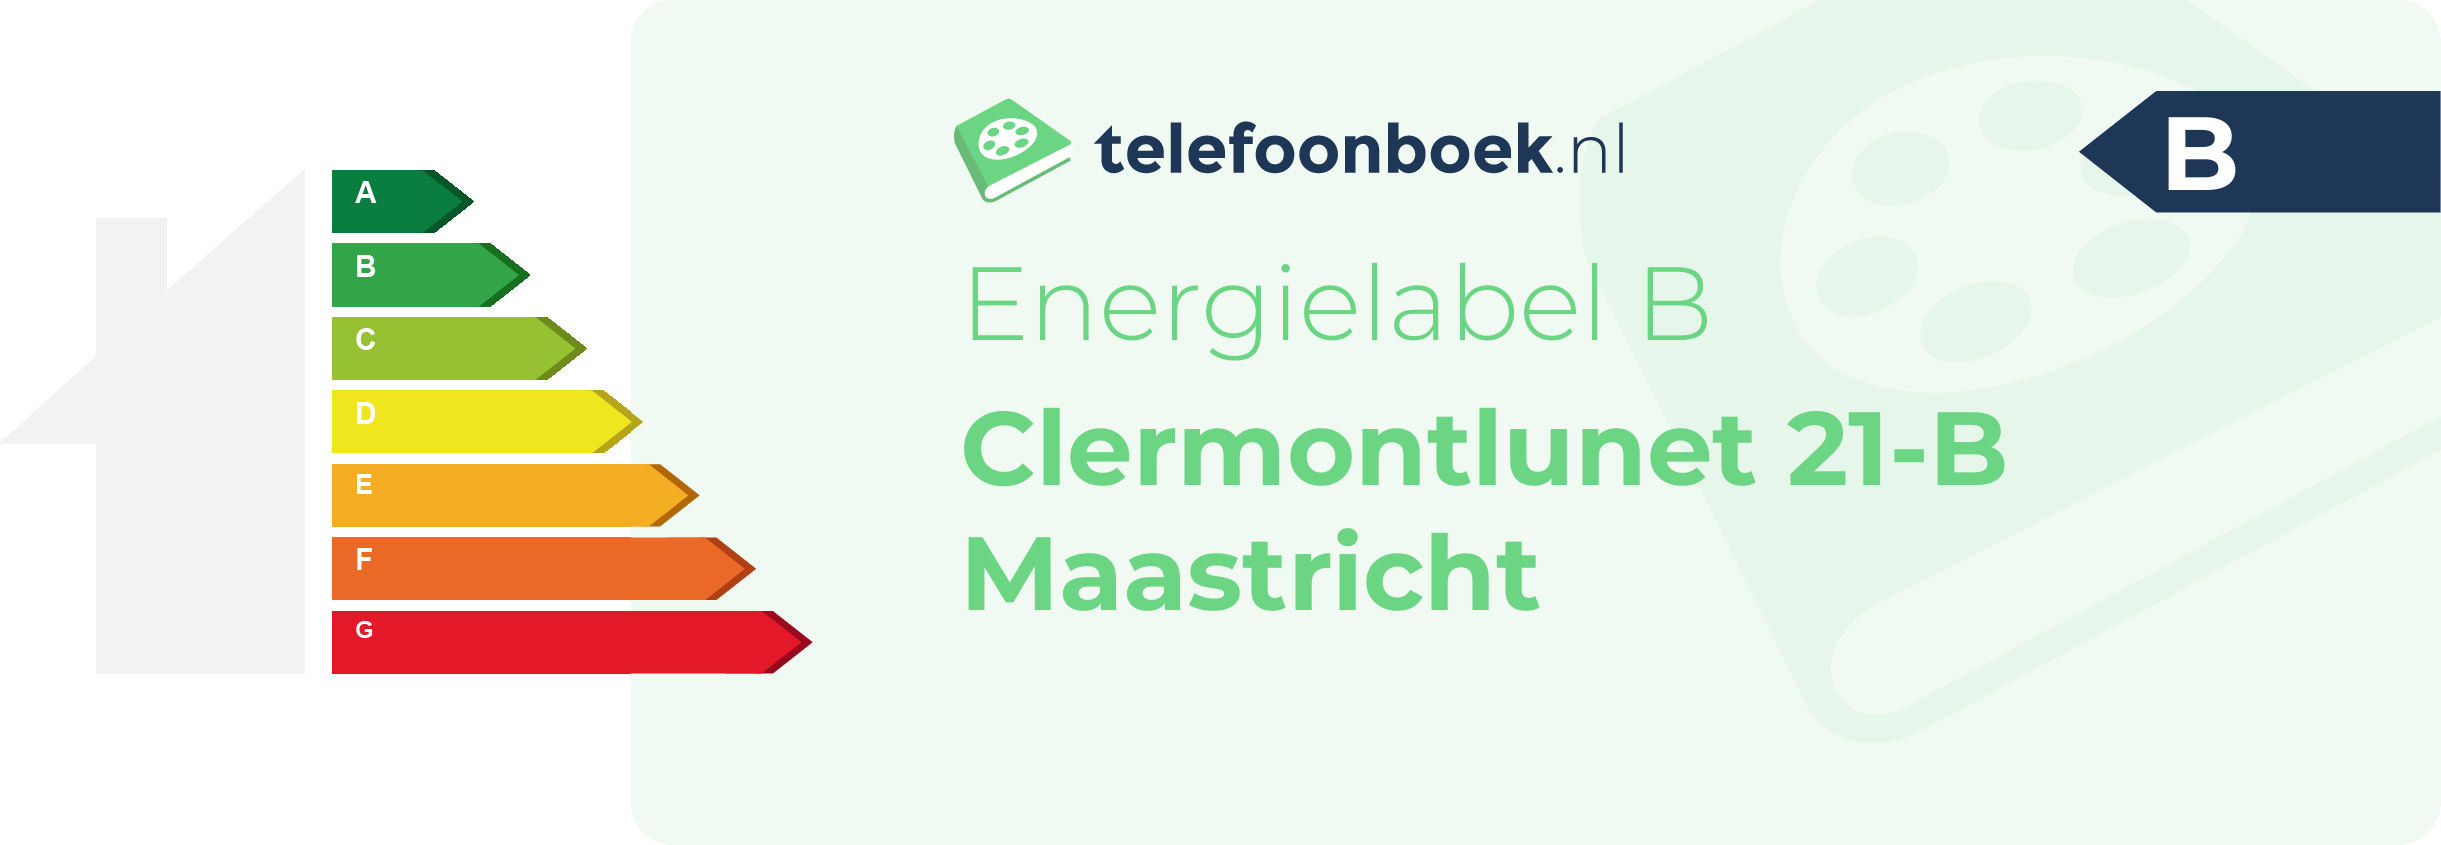 Energielabel Clermontlunet 21-B Maastricht